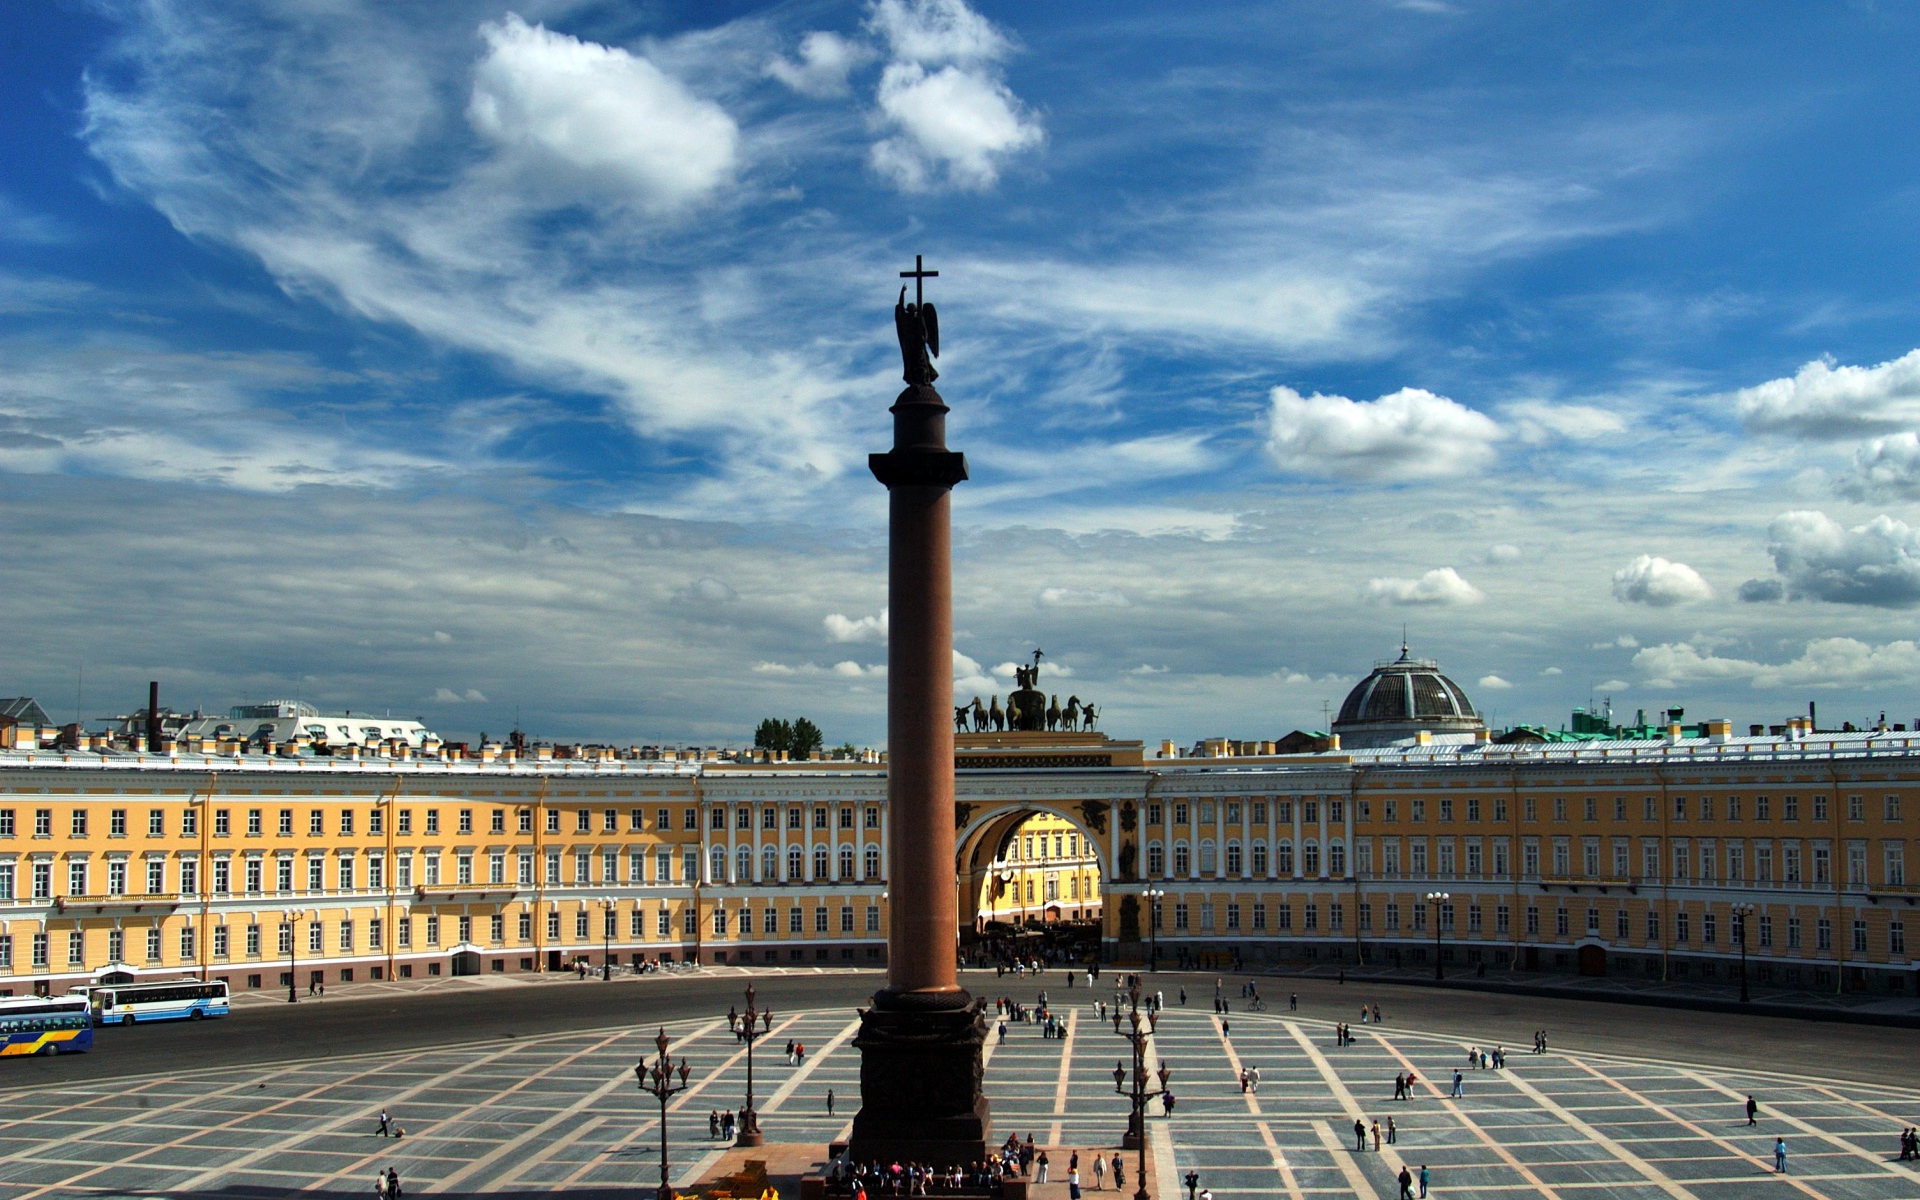 Дворцовая площадь под голубым небом,  Санкт-Петербург. Россия